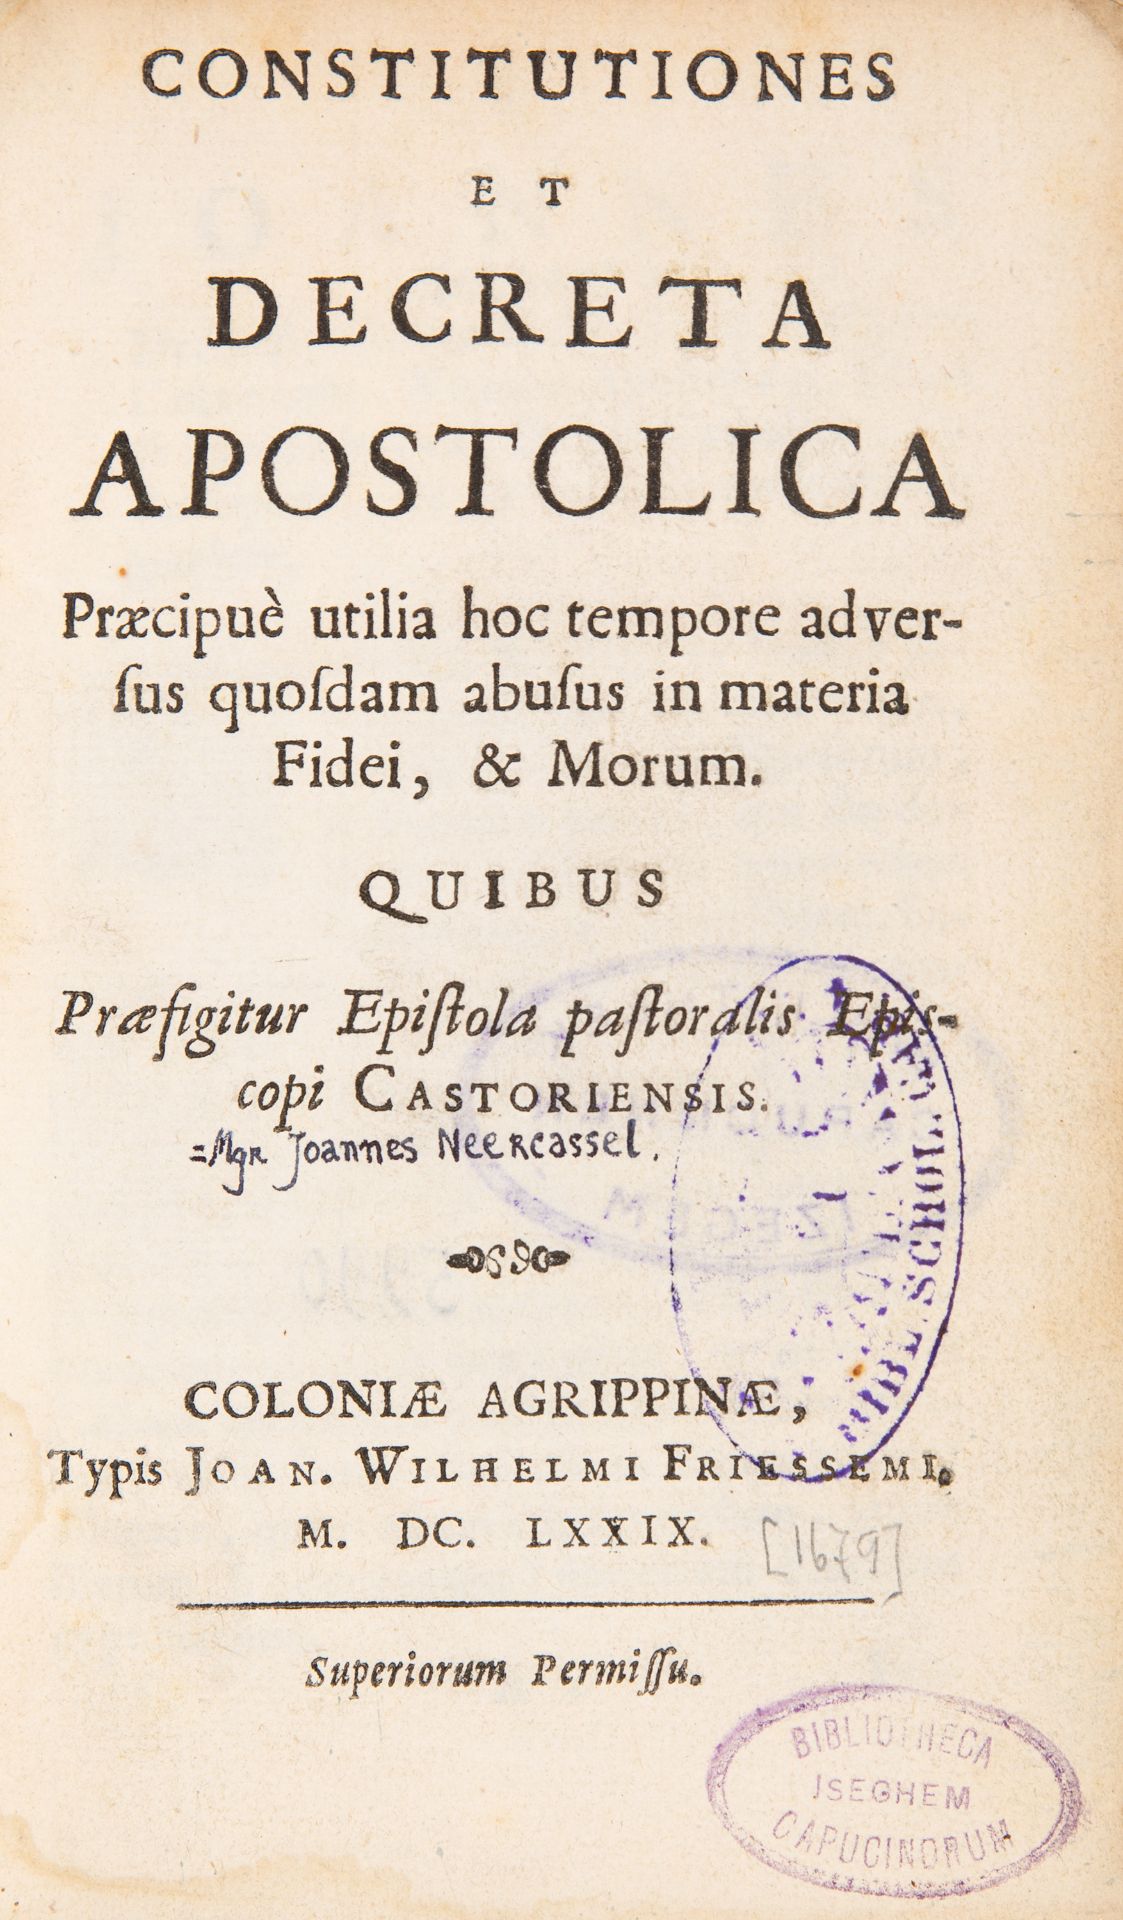 J. B. van Neercassel, Constitutiones, et decreta apostolica praecipuè. Köln 1679.